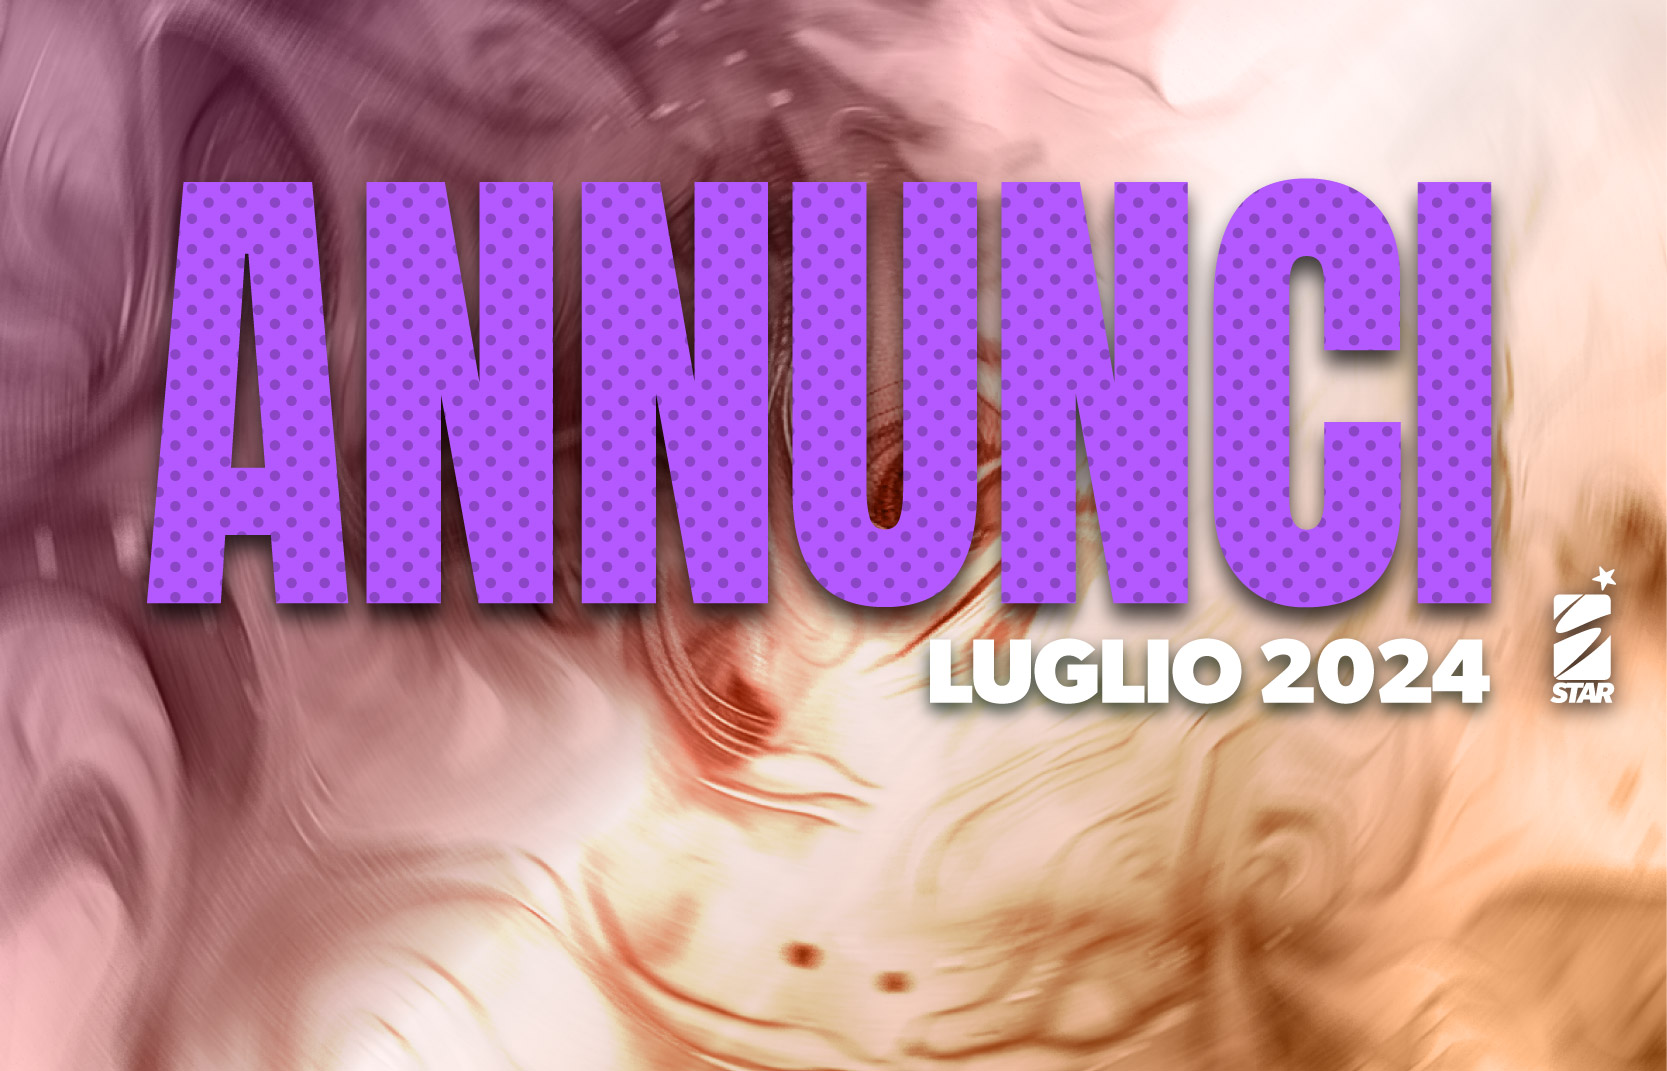 ANNUNCIO - LUGLIO 2024 - COVER.jpg